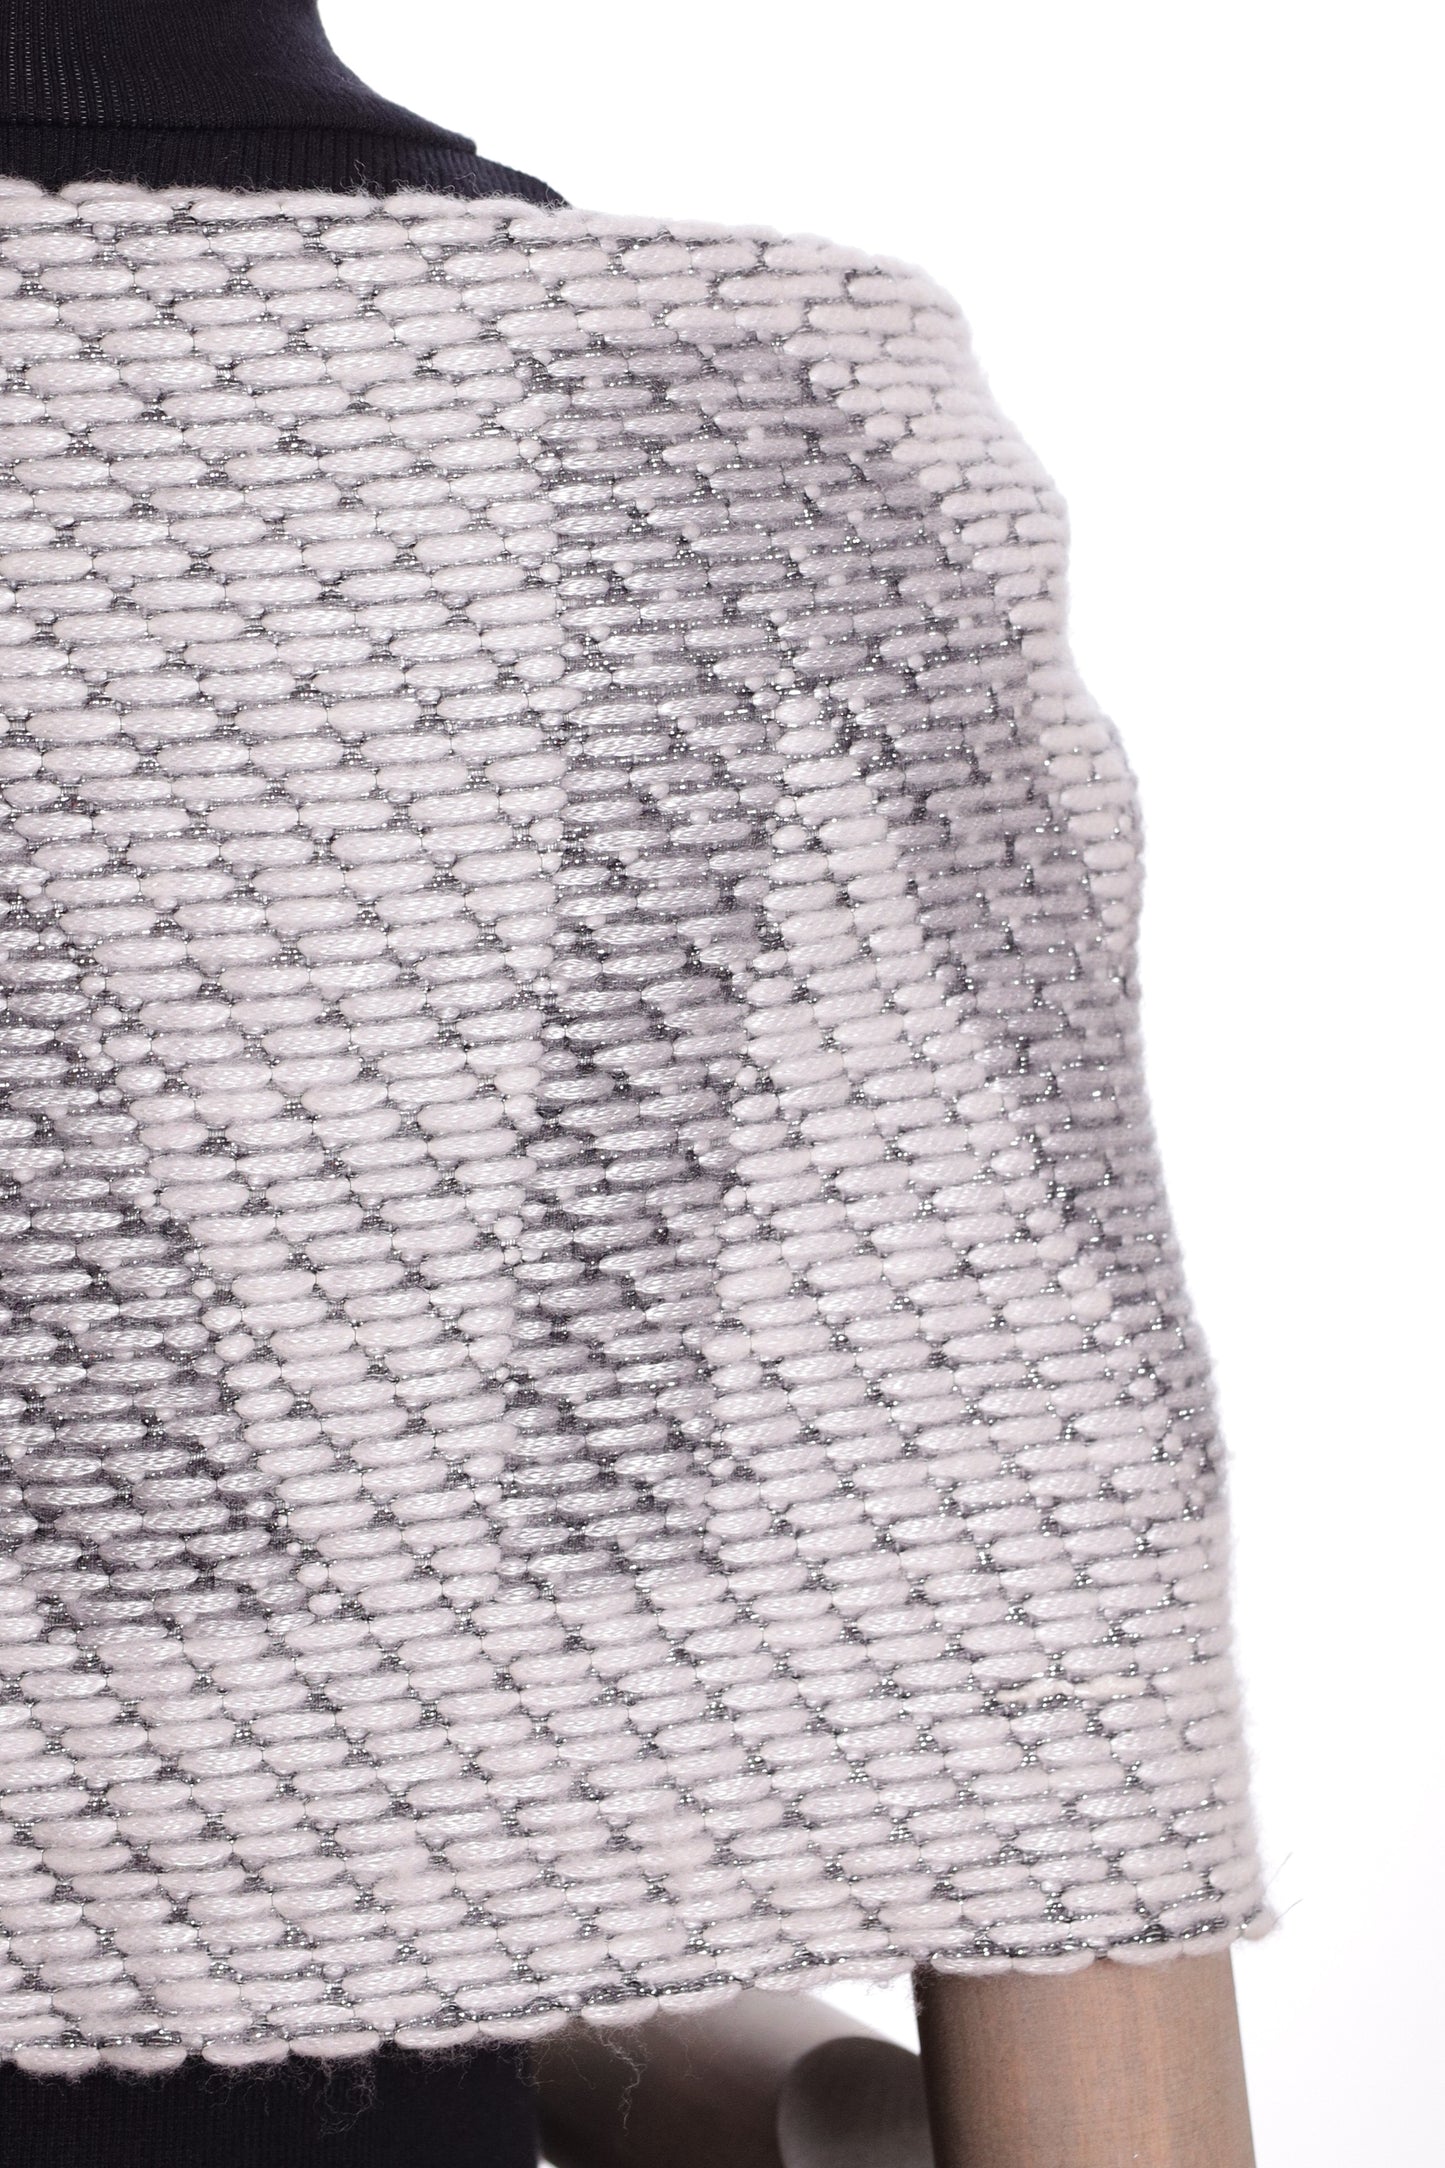 Sciarpa CHANEL in lana di colore grigio con fili e frange in lurex argento